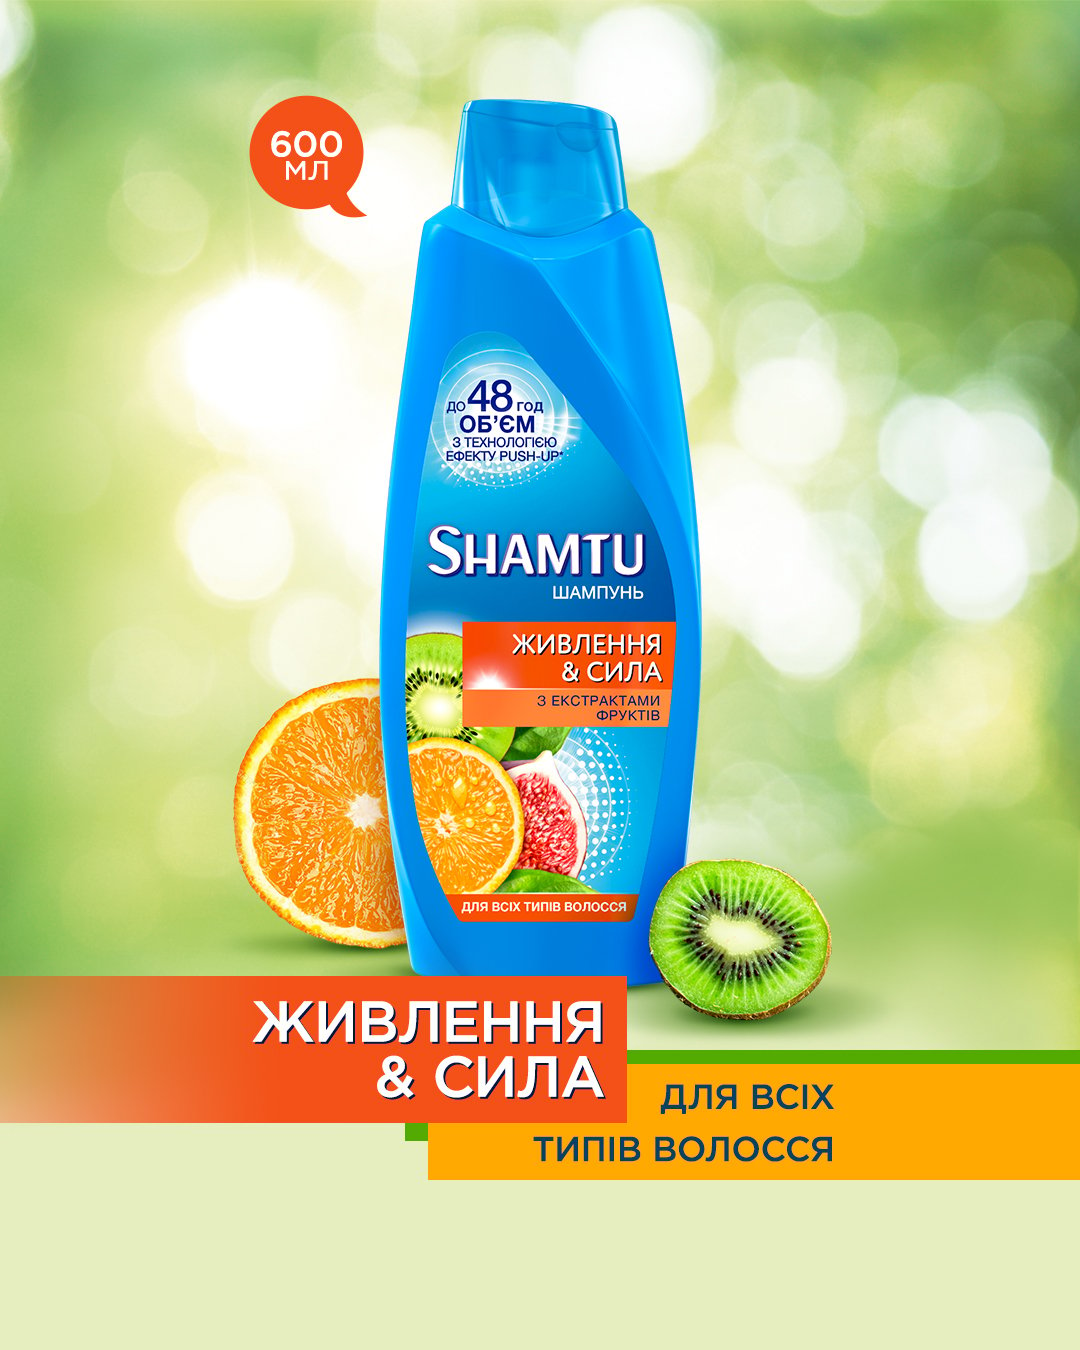 Шампунь Shamtu Питание и Сила, c экстрактами фруктов, для всех типов волос, 600 мл - фото 4